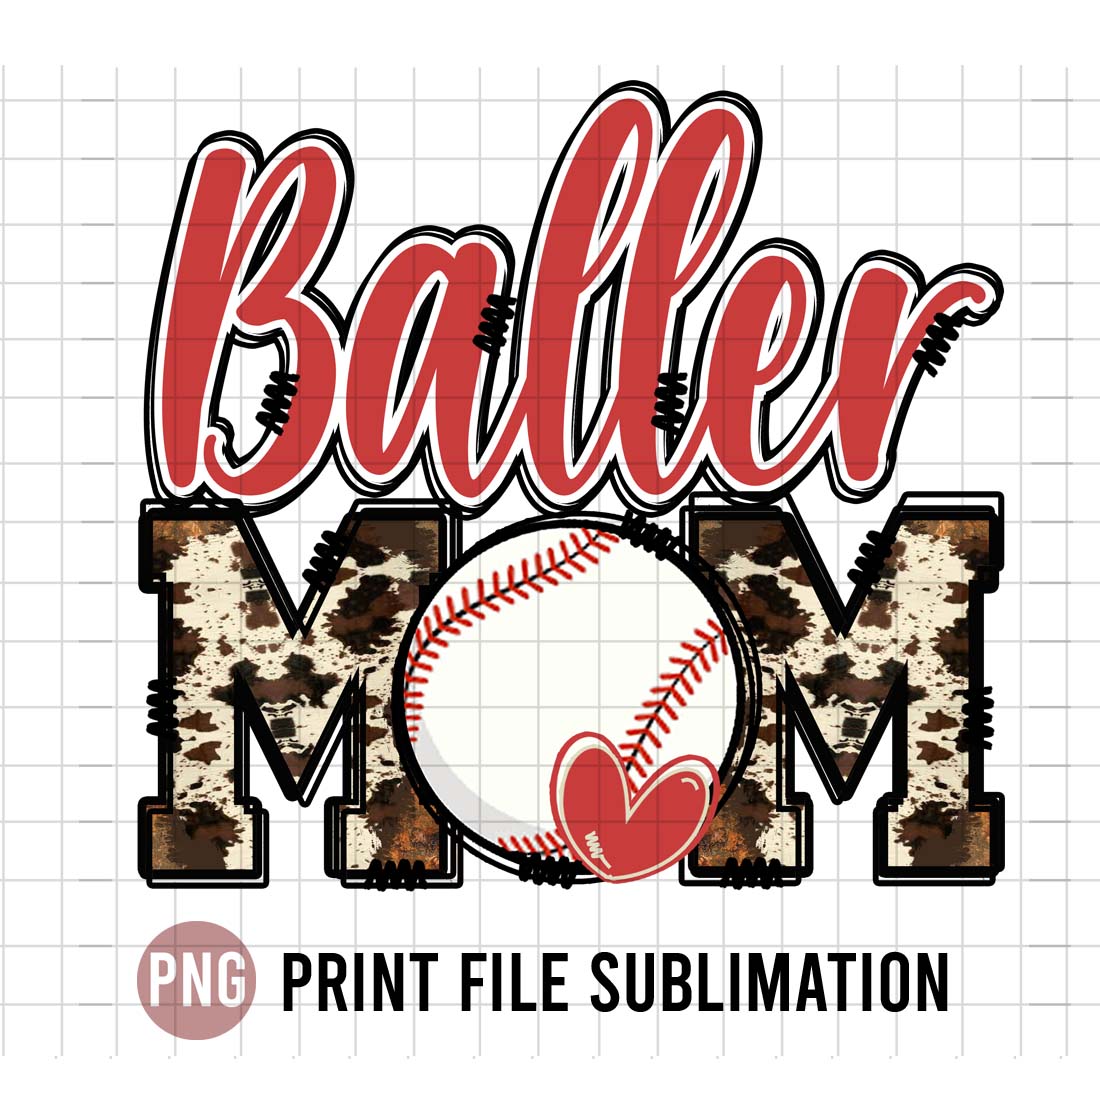 Baller Baseball Mom cover image.